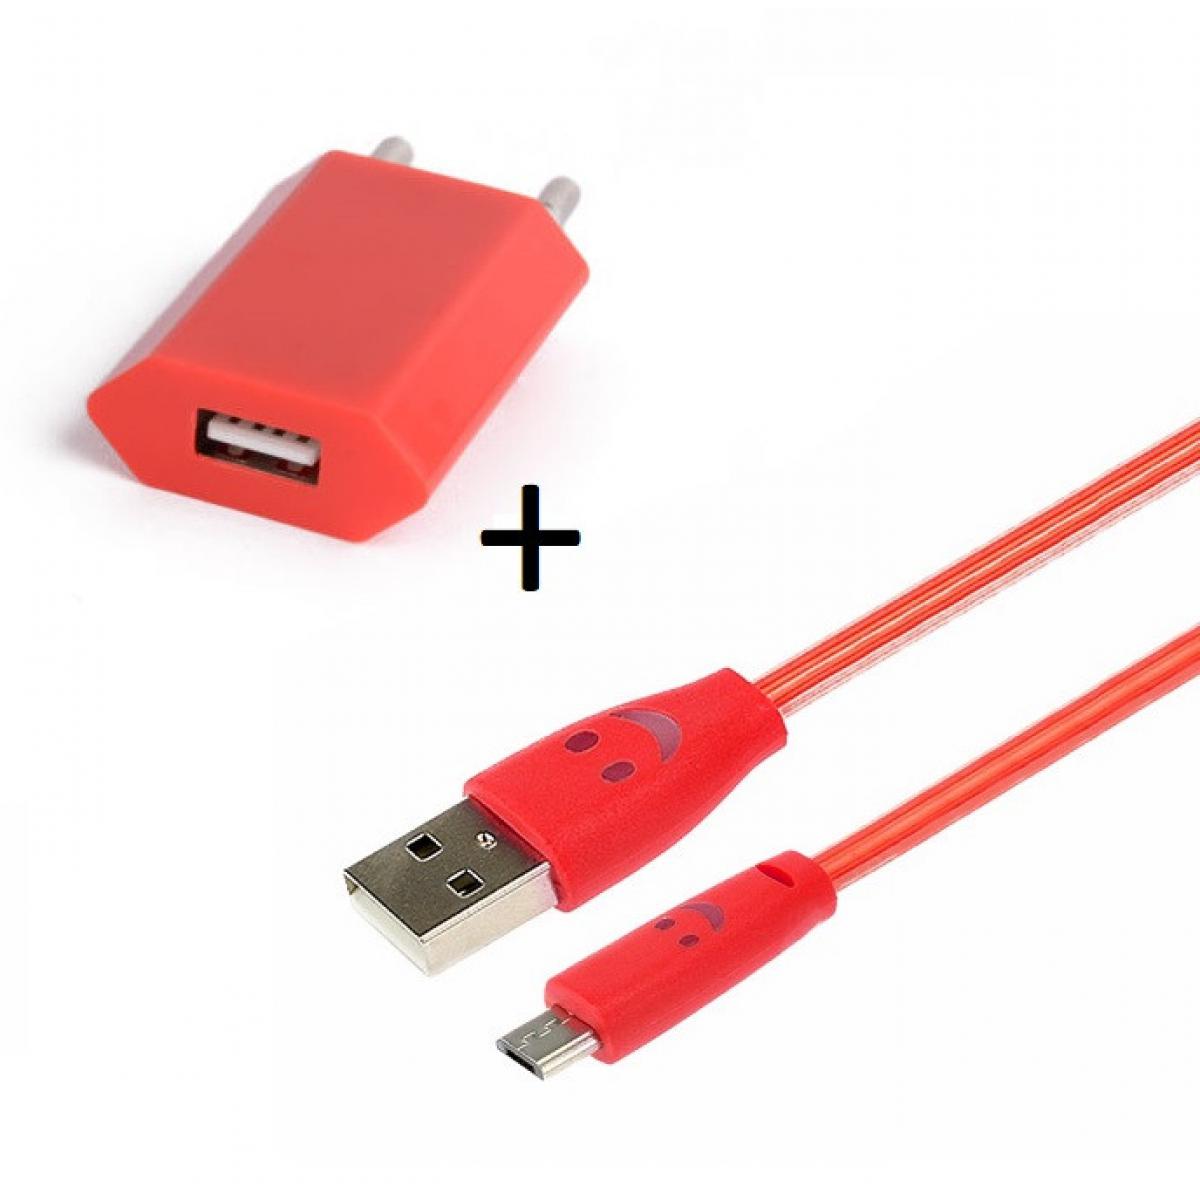 Shot - Pack Chargeur pour Enceinte Bose SoundLink Revolve Smartphone Micro USB (Cable Smiley LED + Prise Secteur USB) Android Connecteu (ROUGE) - Chargeur secteur téléphone